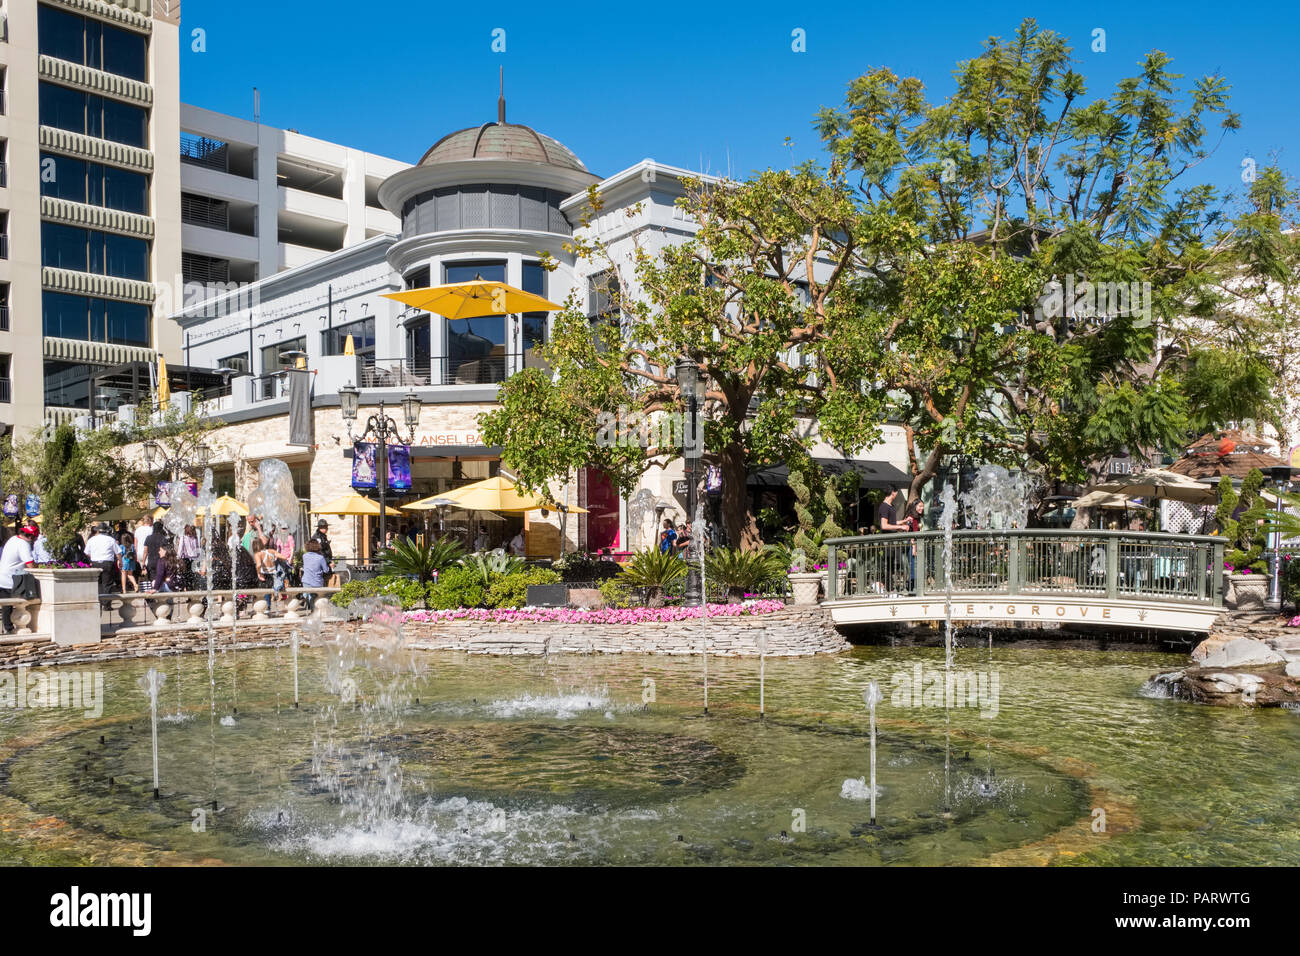 Fontaine au centre commercial haut de gamme, la rainure à la Farmers Market, Los Angeles, Californie, USA Banque D'Images